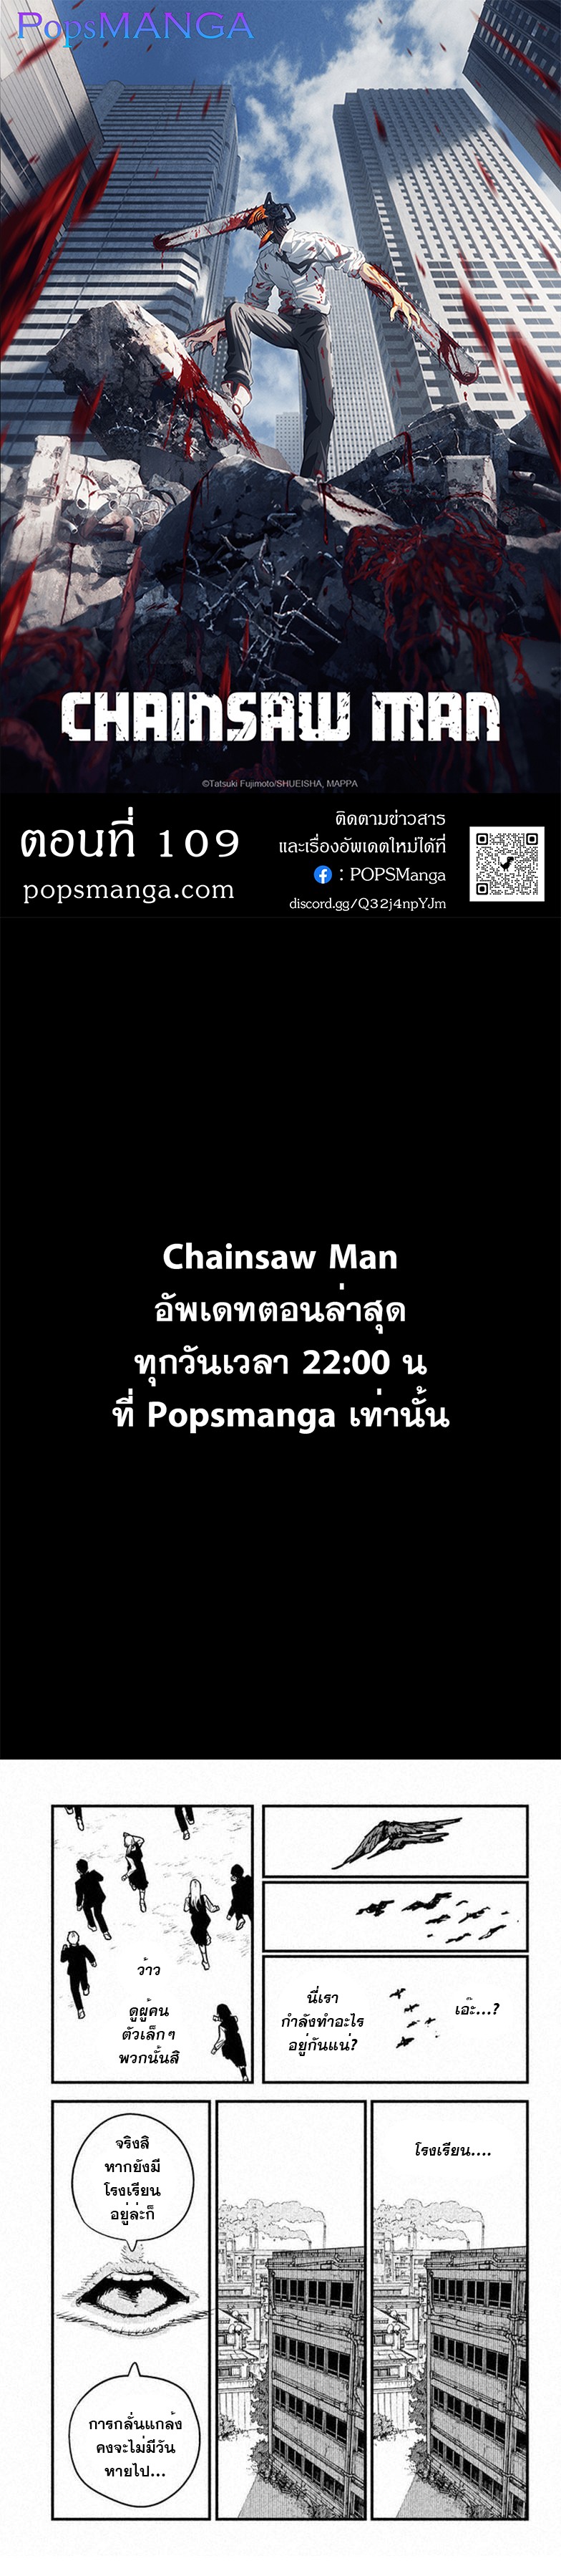 Chainsaw Man 109 (1)